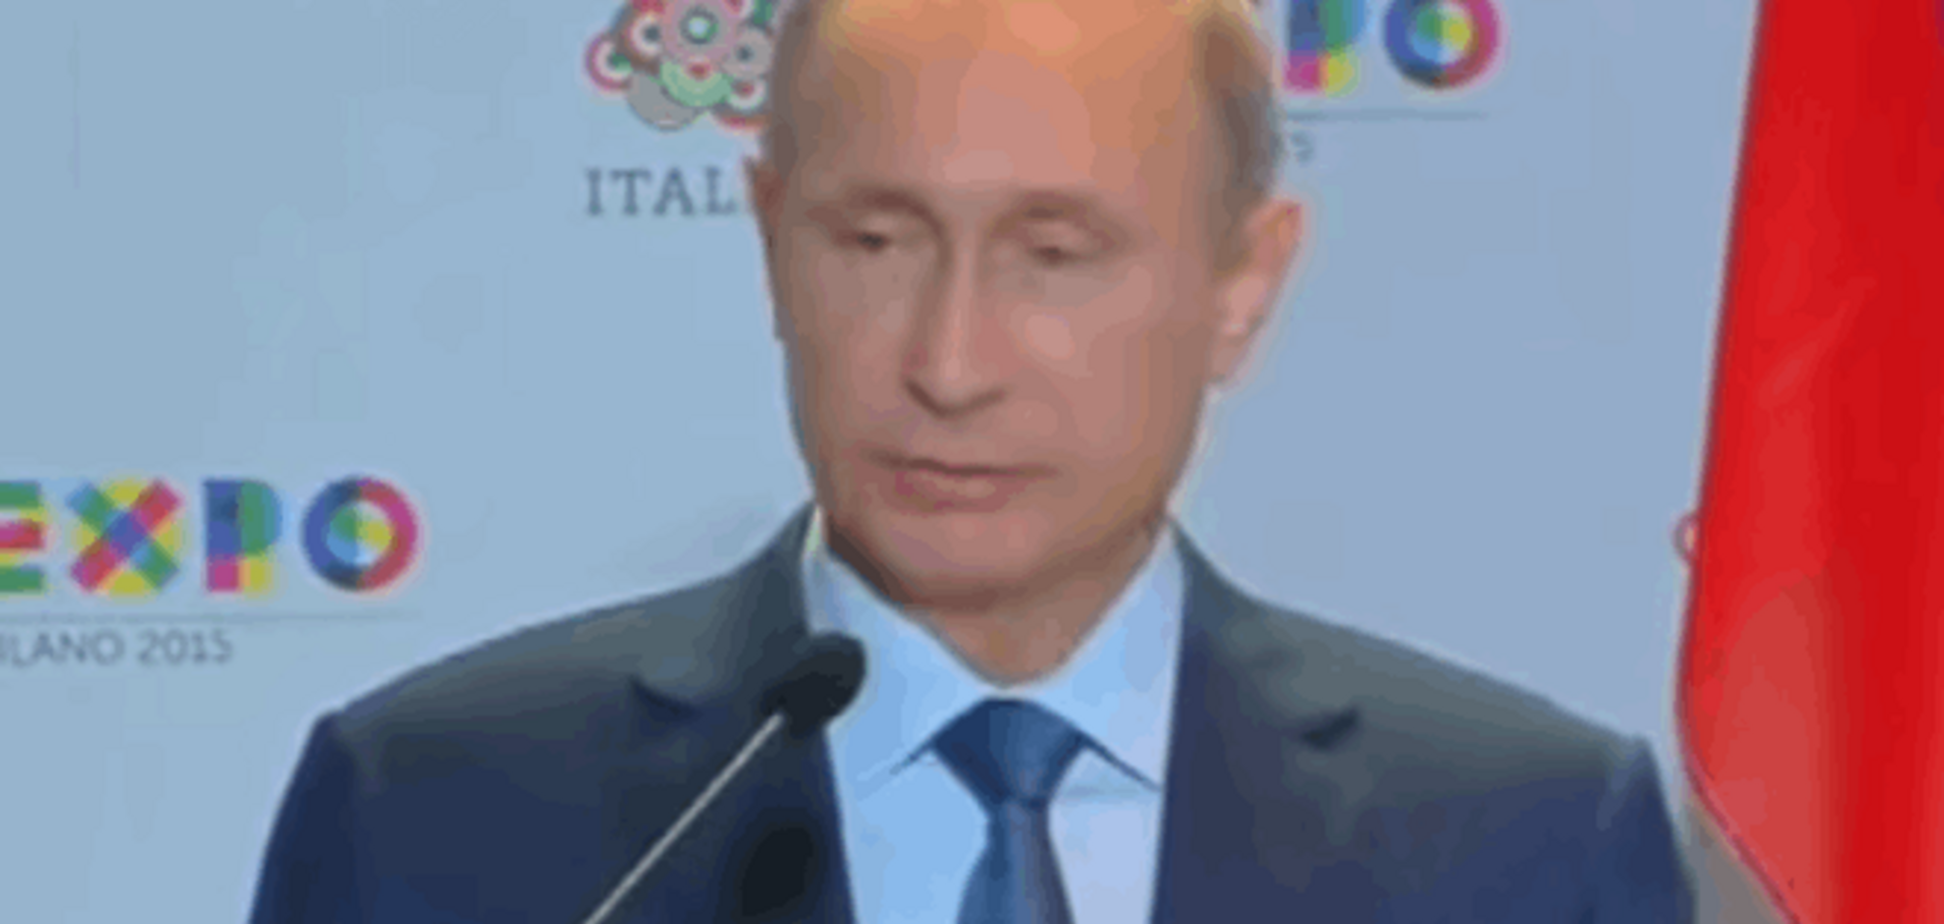 Выкрутился! Путин назвал G7 'клубом по интересам': видеофакт